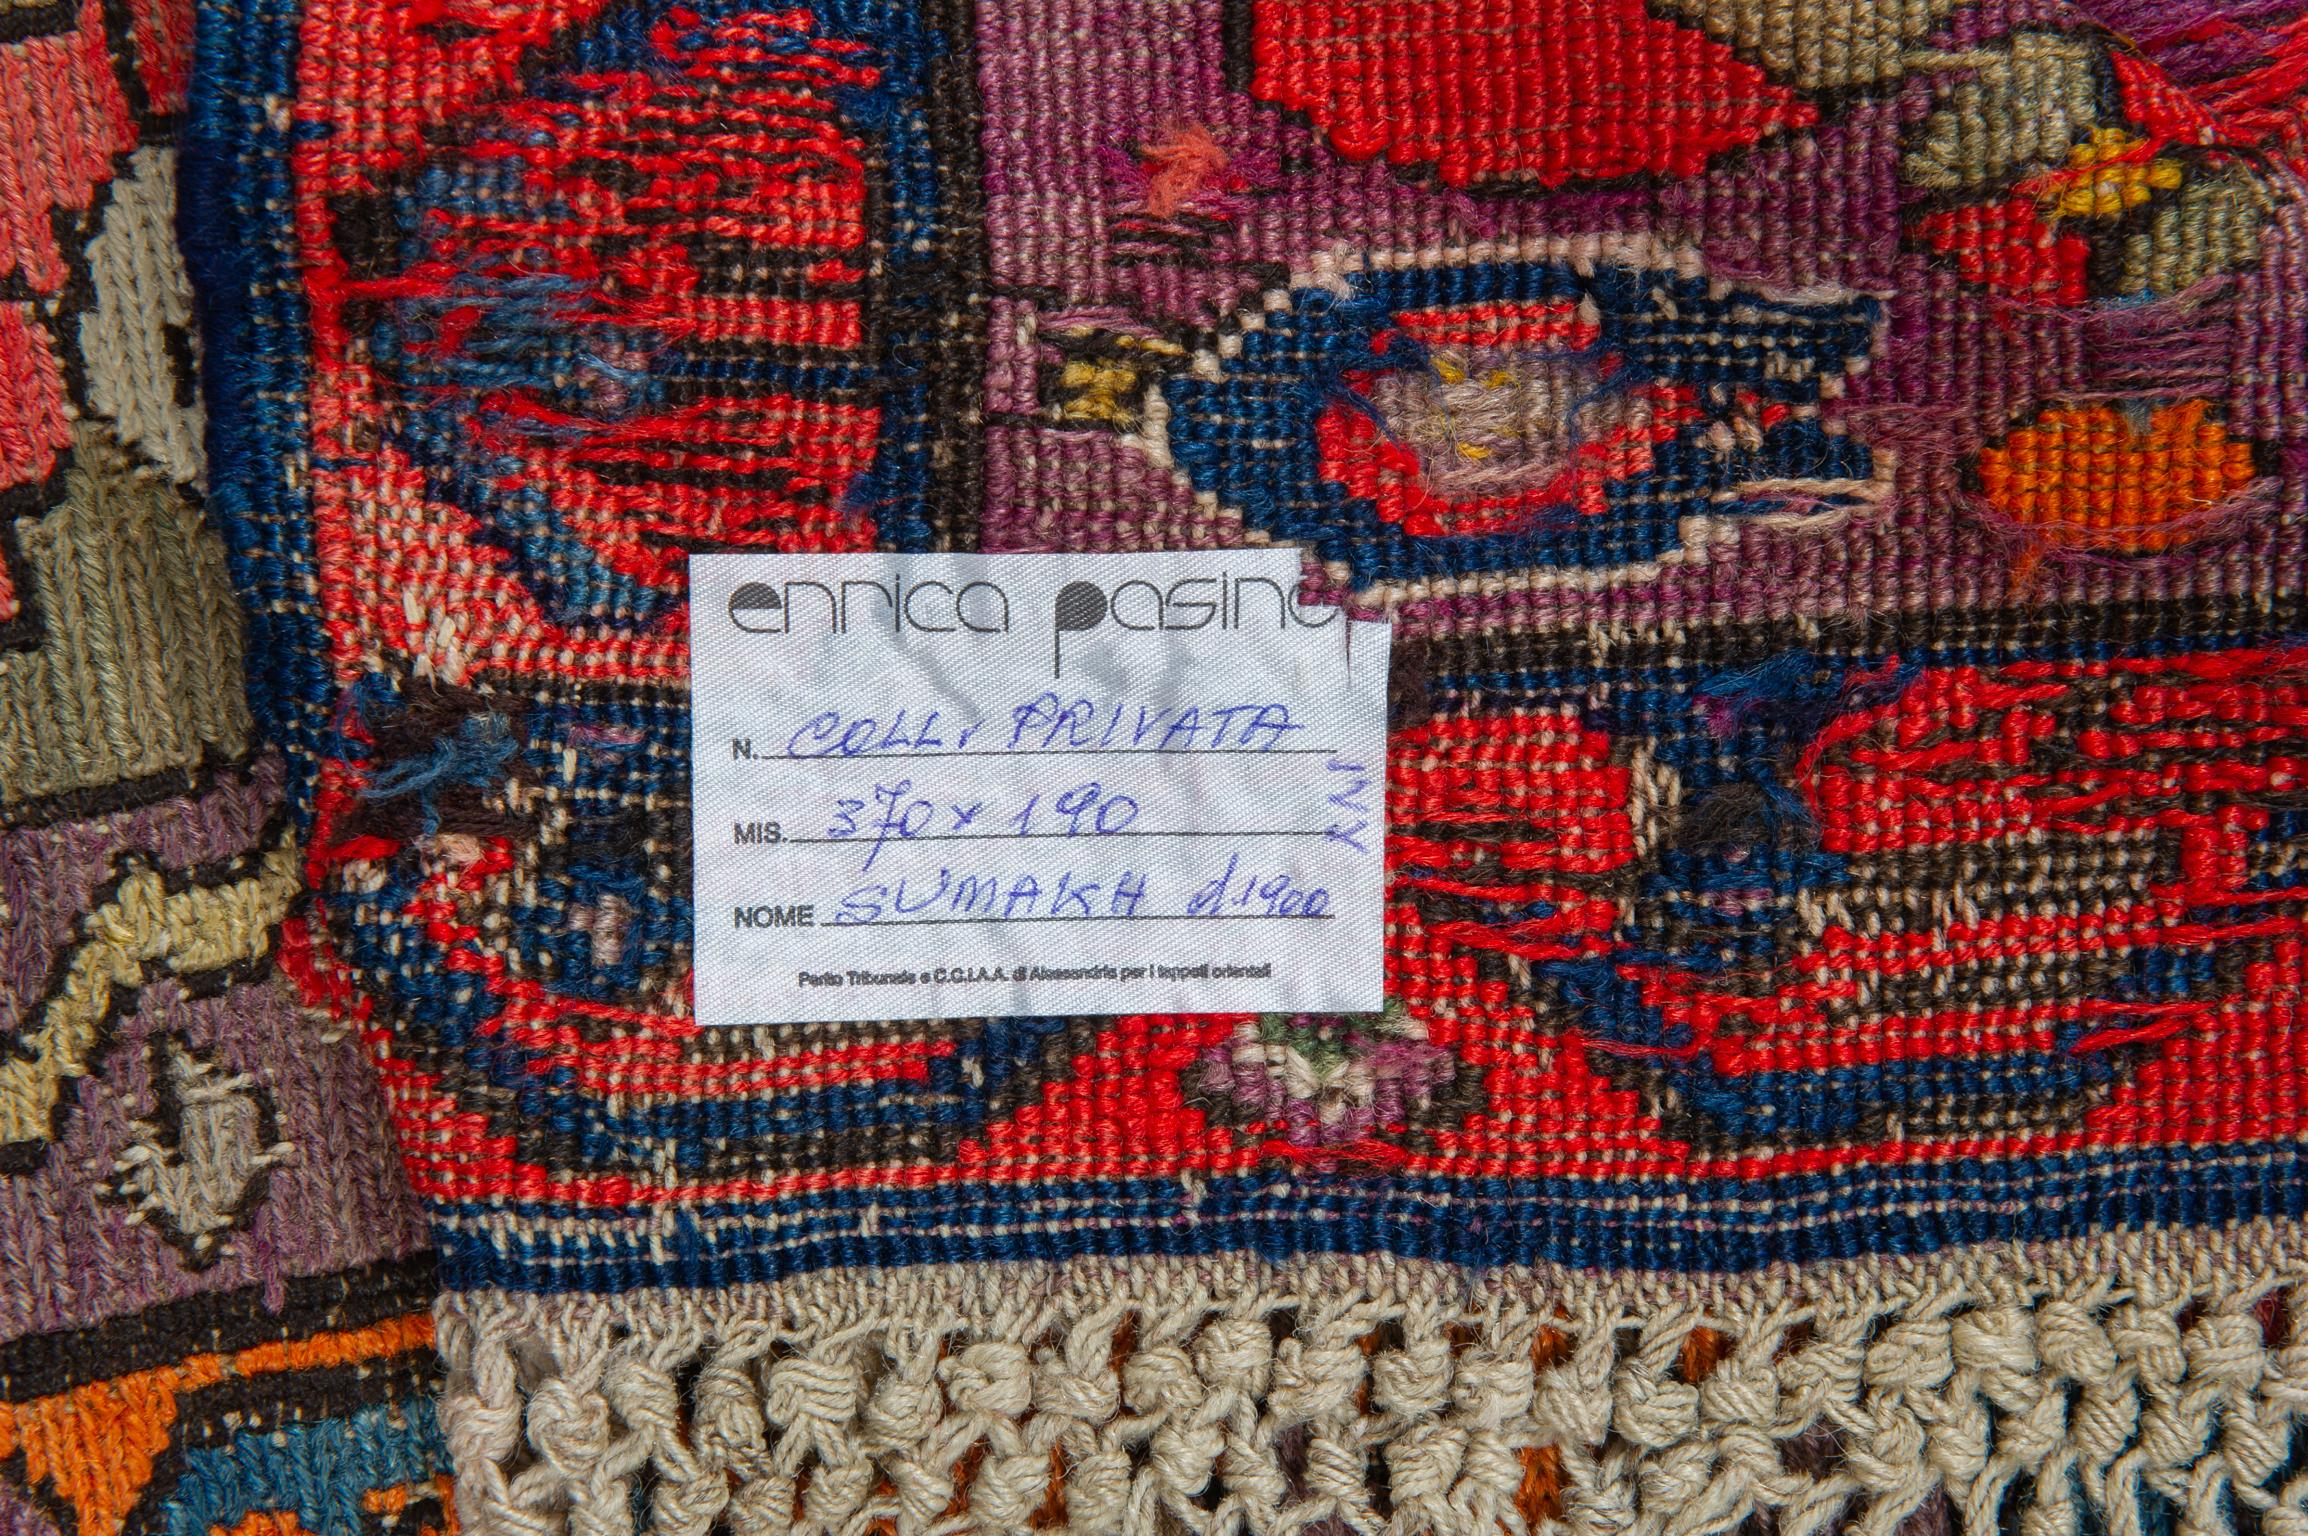 Antiker Sumakh-Teppich aus einer Privatsammlung - blauer Hintergrund mit drei großen hellblauen Medaillons. Stilisierte polychrome Blumenbordüre auf verblasstem indigoblauem Hintergrund. Es ist ein Sammlerstück. Auf dem Teppich datiert: 1316 =